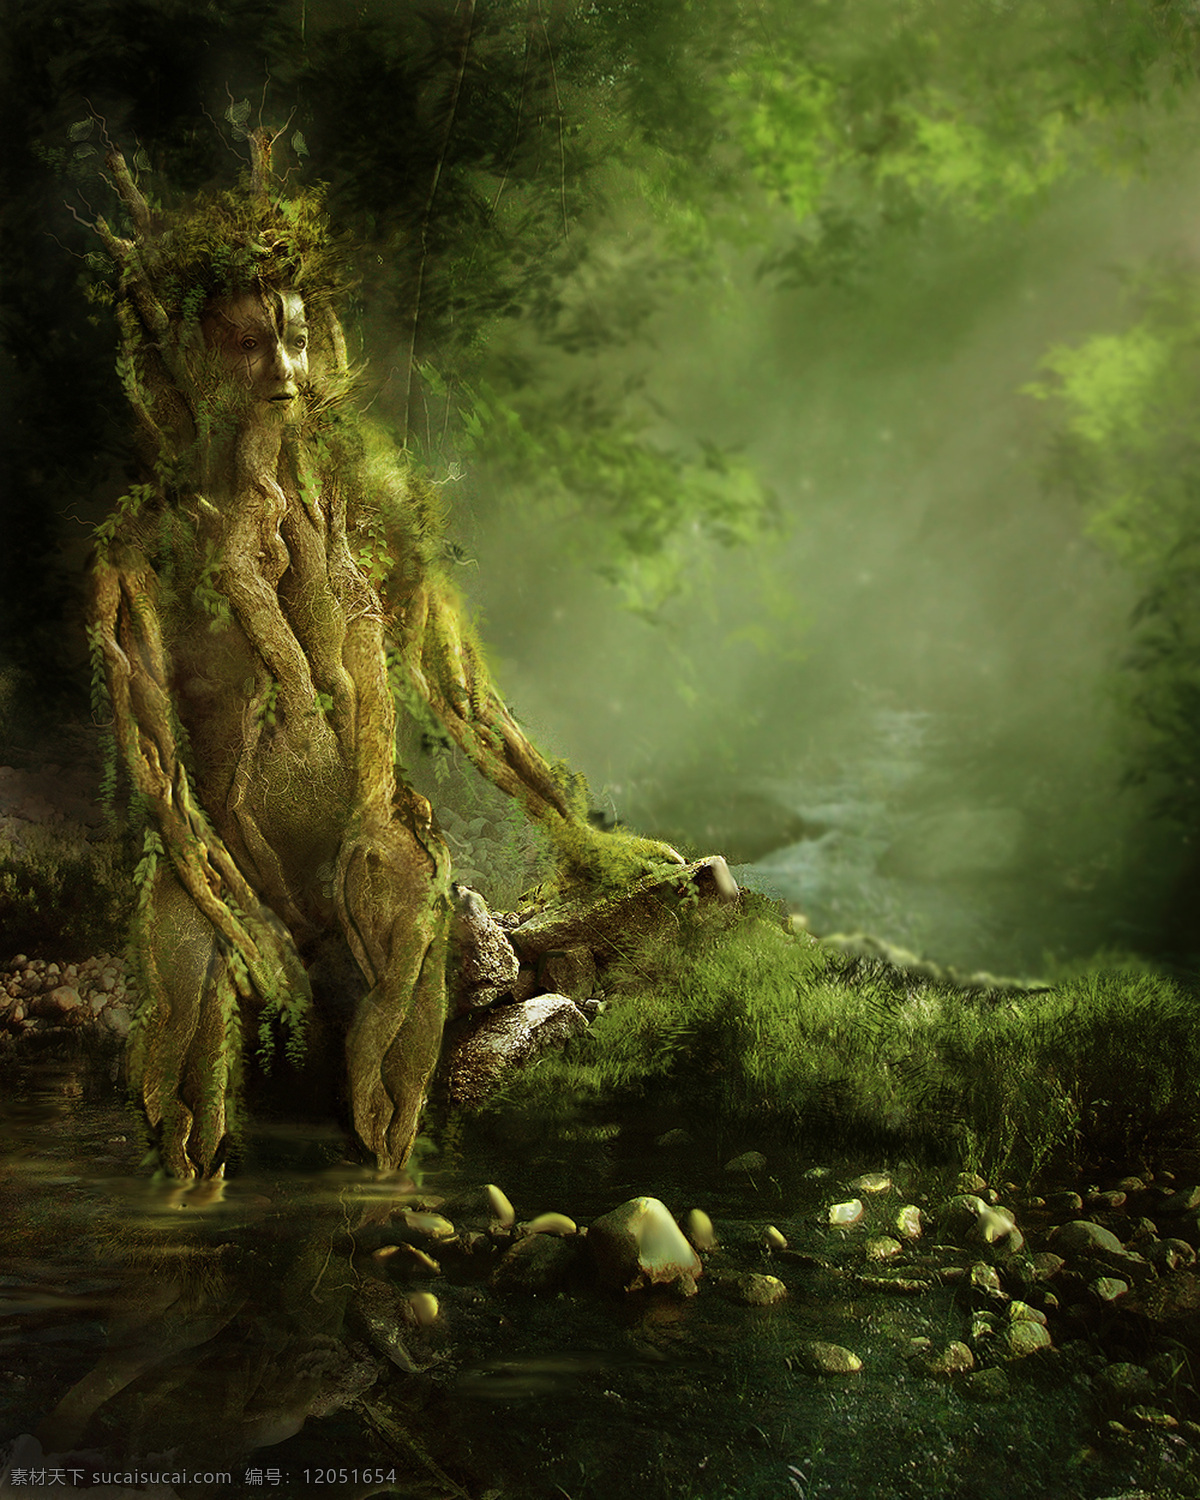 梦幻自然 梦幻 童话 唯美 大自然 森林 草地 朦胧 河边 树根 人物 自然风景 自然景观 黑色